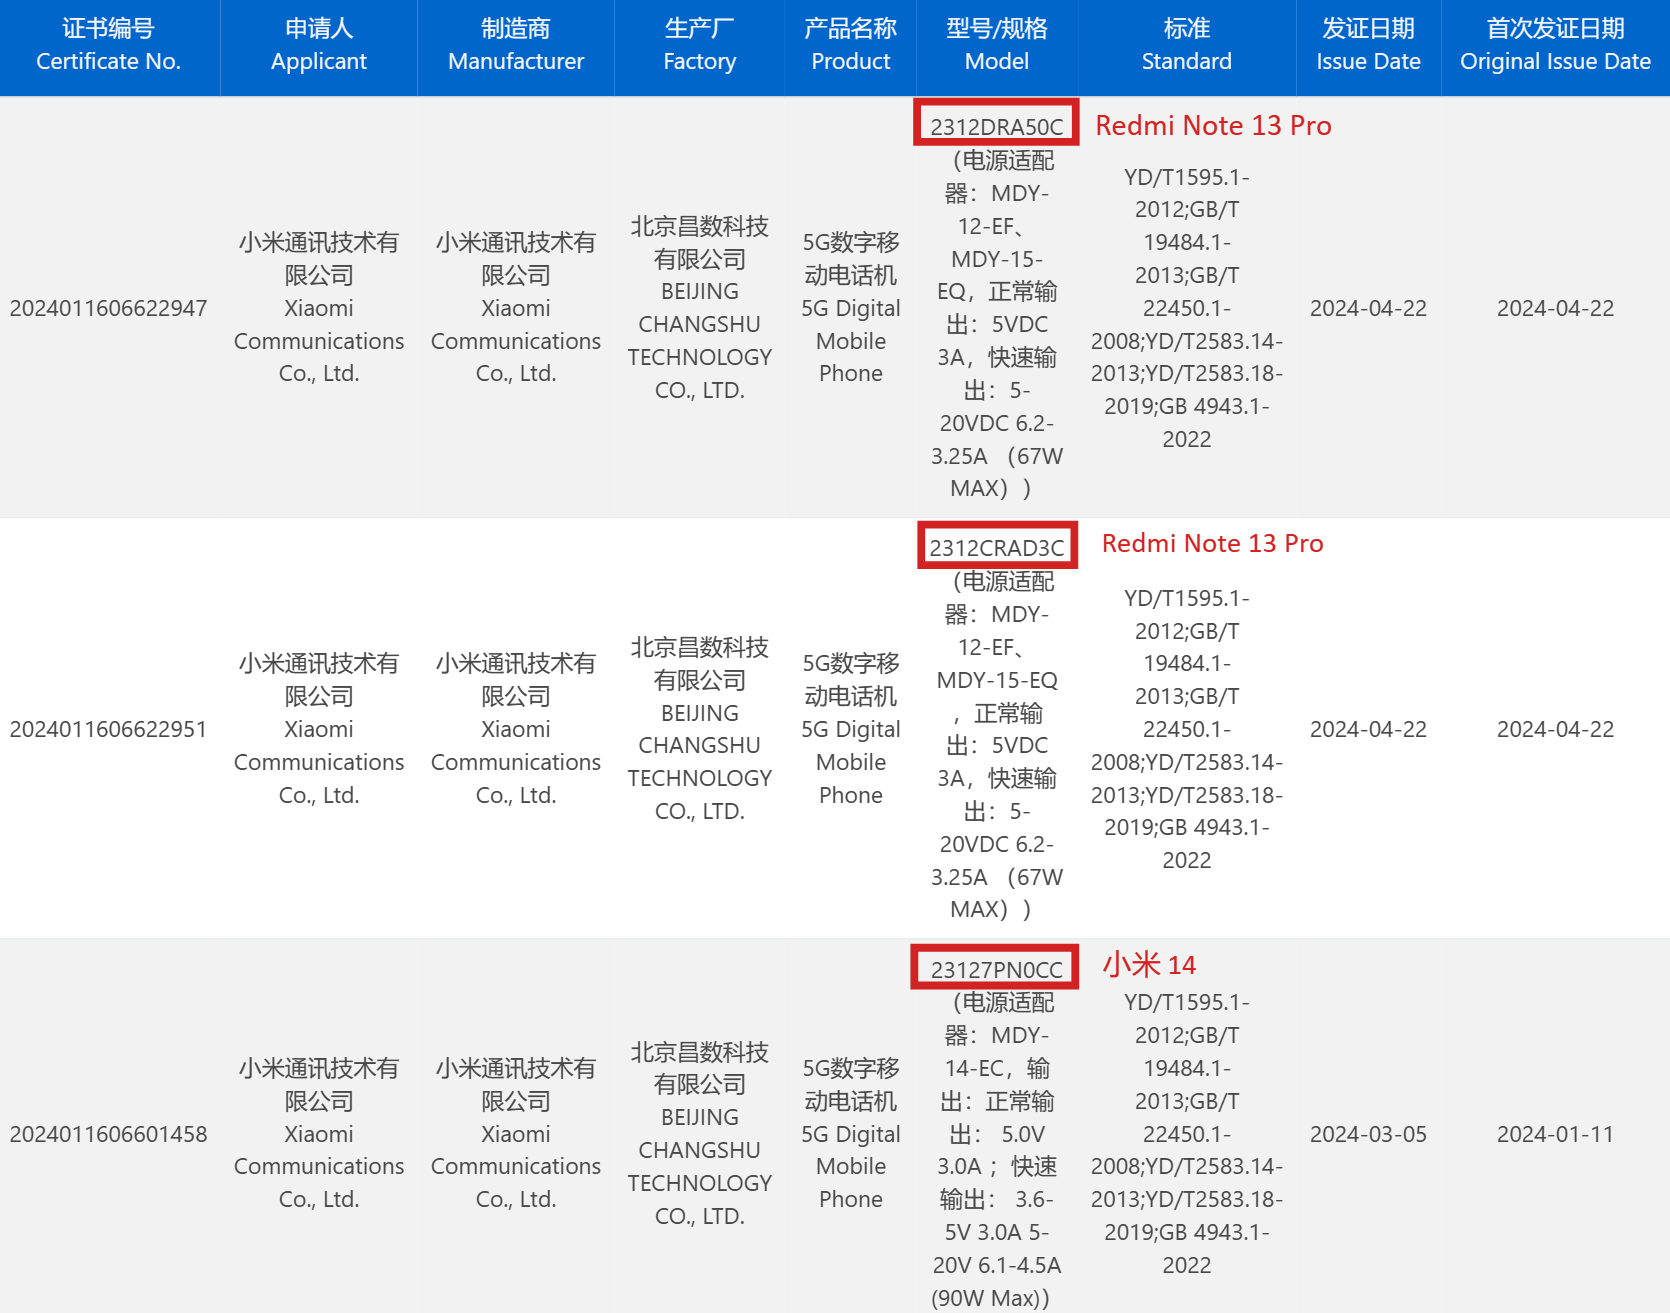 小米 Redmi Note 13 Pro 手机新增北京昌平智能工厂生产，已通过 3C 认证